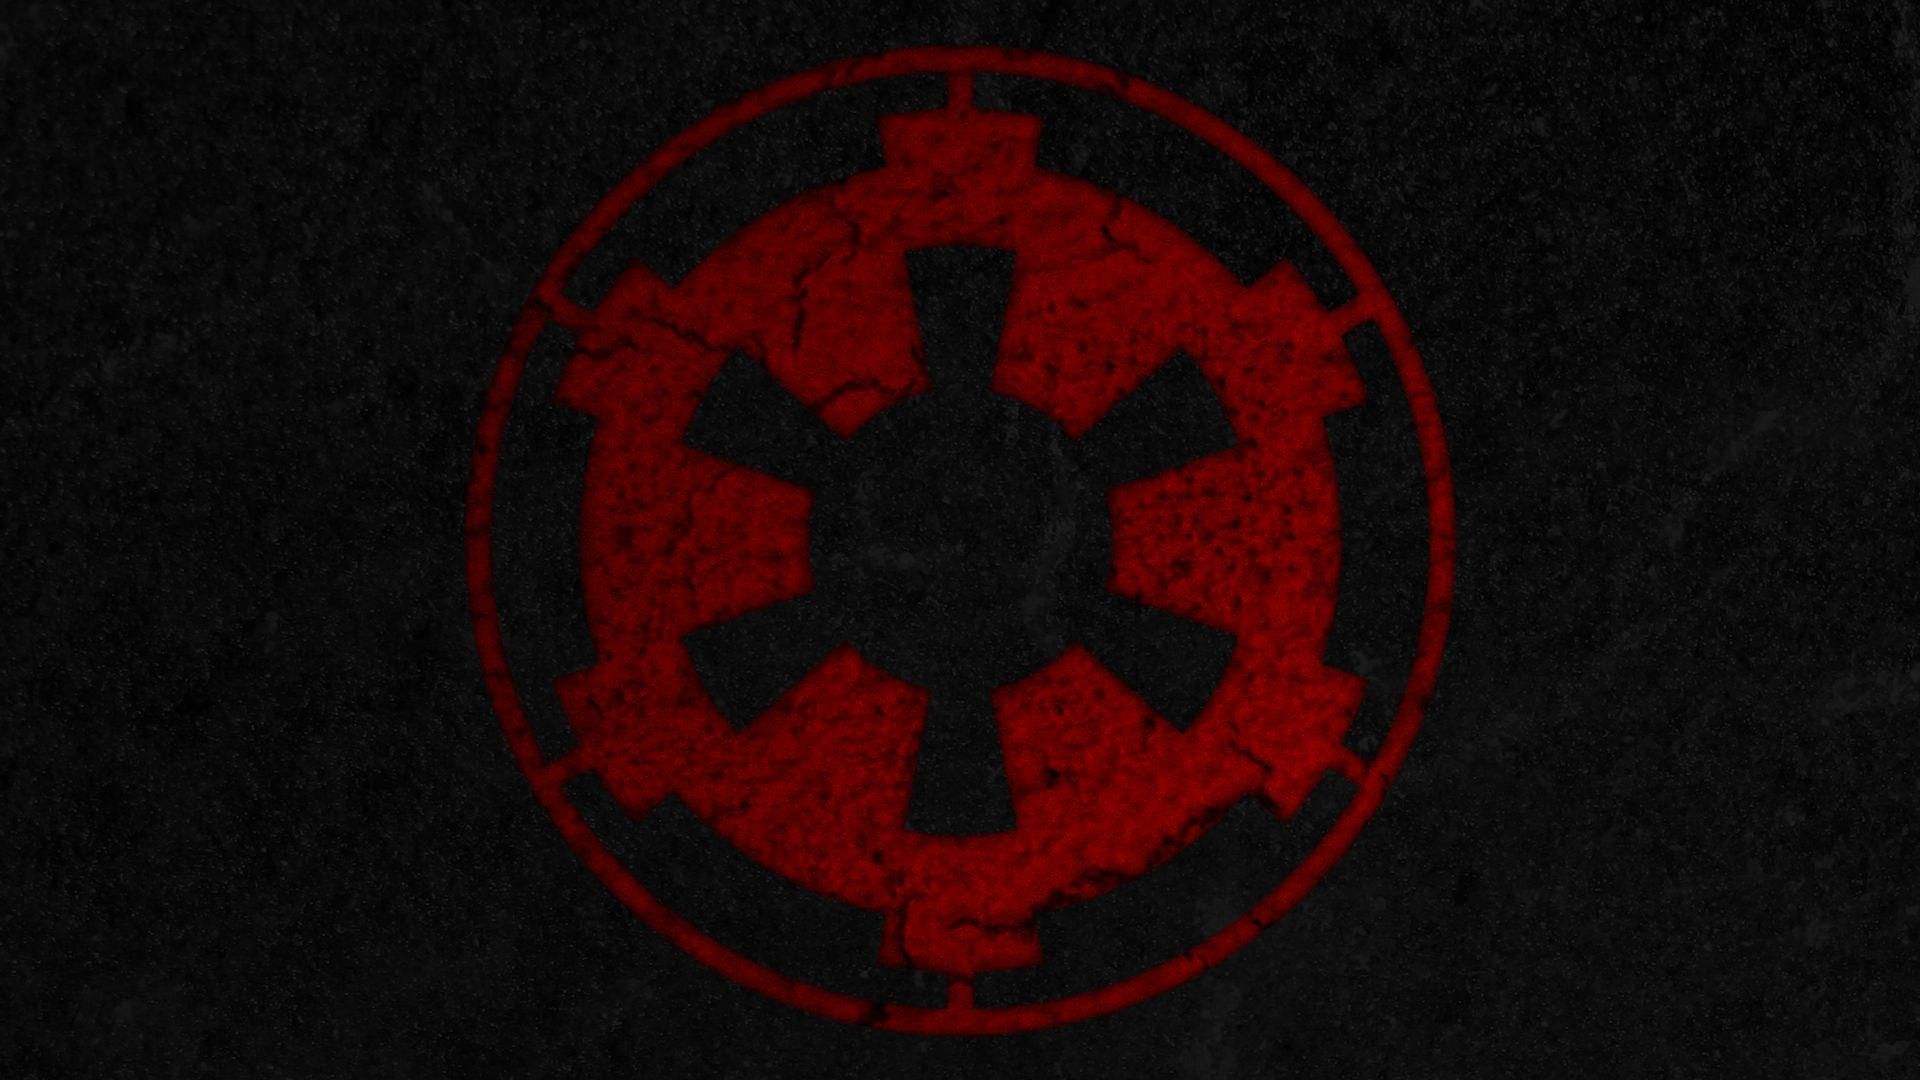 Star Wars Empire Wallpaper Fresh Star Wars Empire Logo Wallpaper